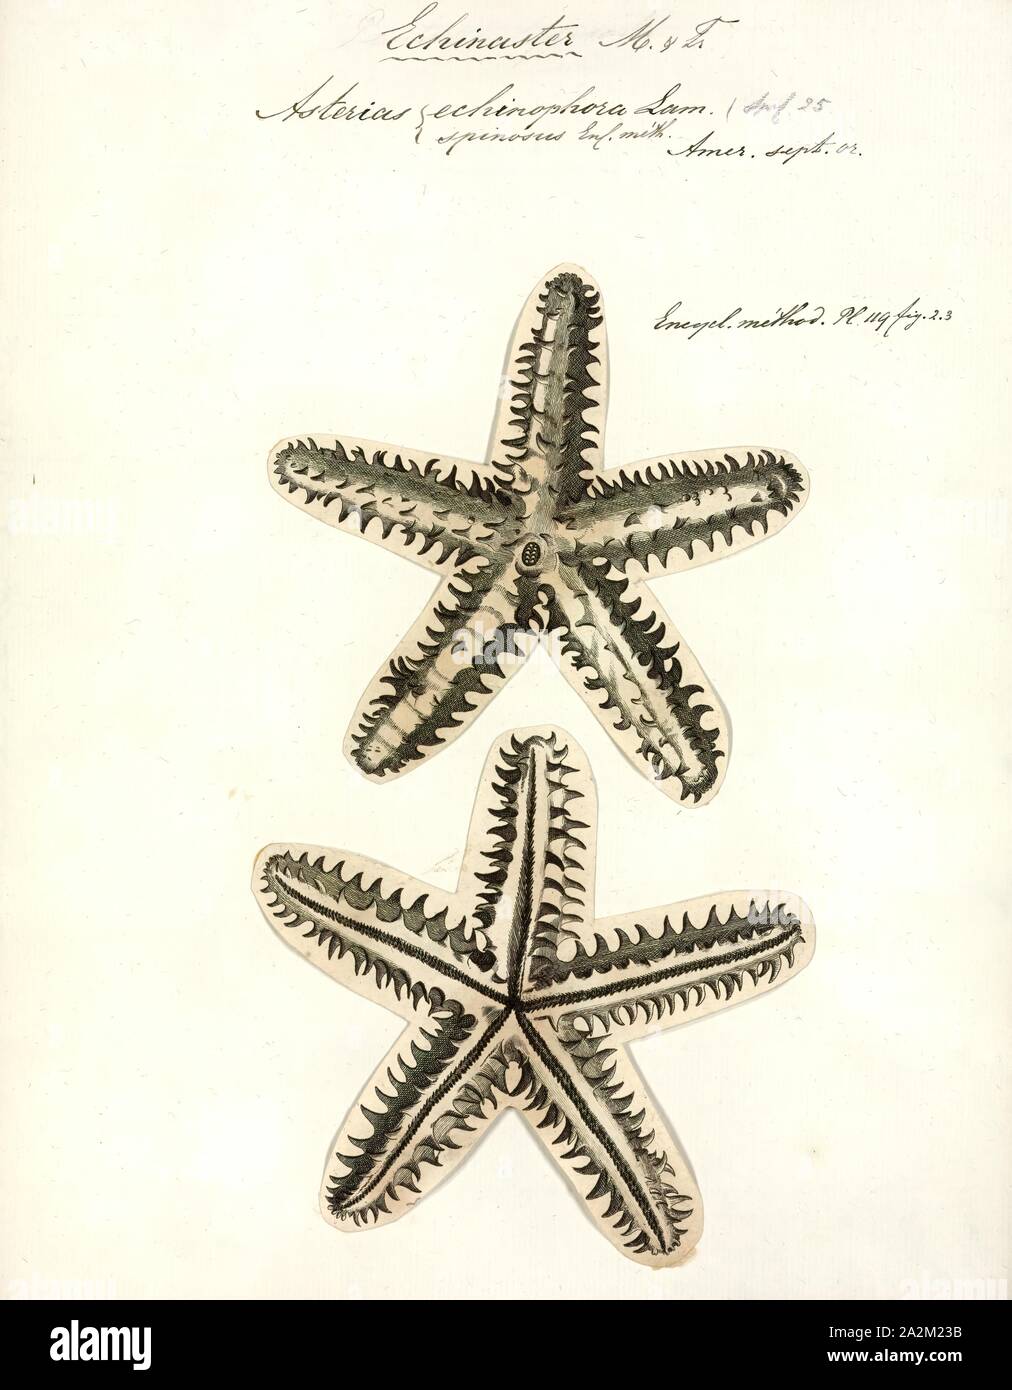 Asterias echinophora, Print Stock Photo